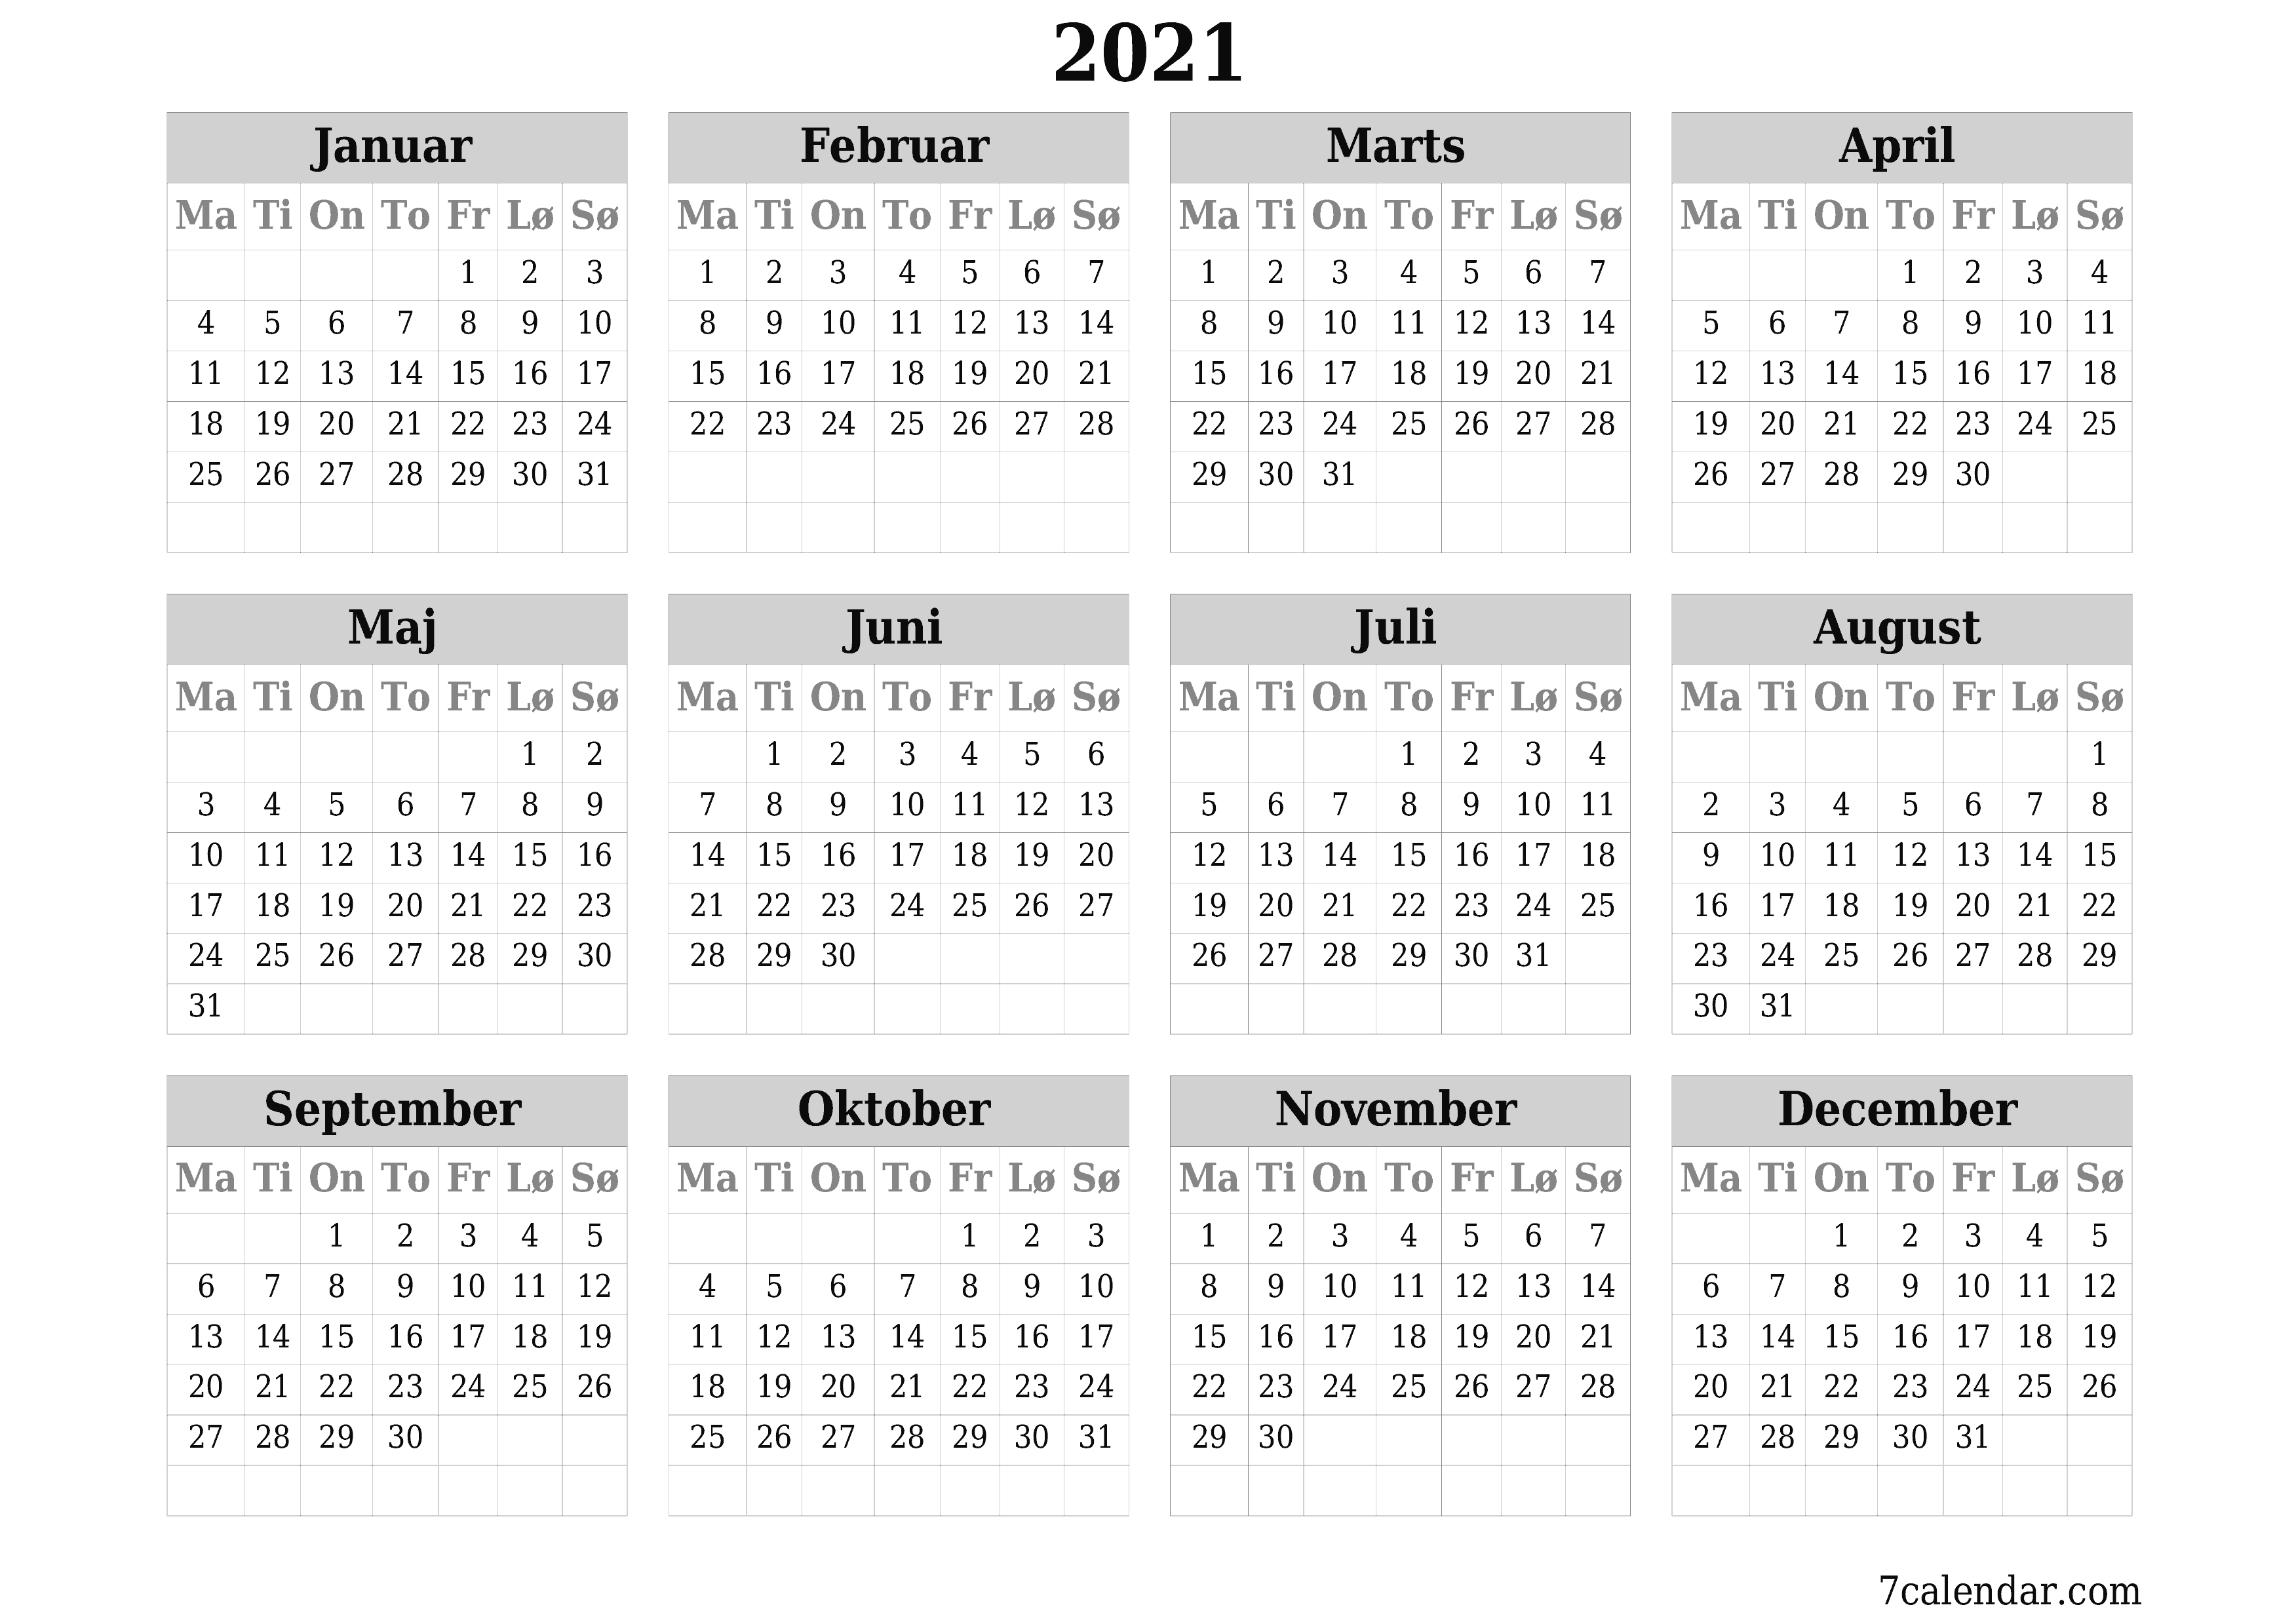 Tom årlig planlægningskalender for året 2021 med noter, gem og udskriv til PDF PNG Danish - 7calendar.com